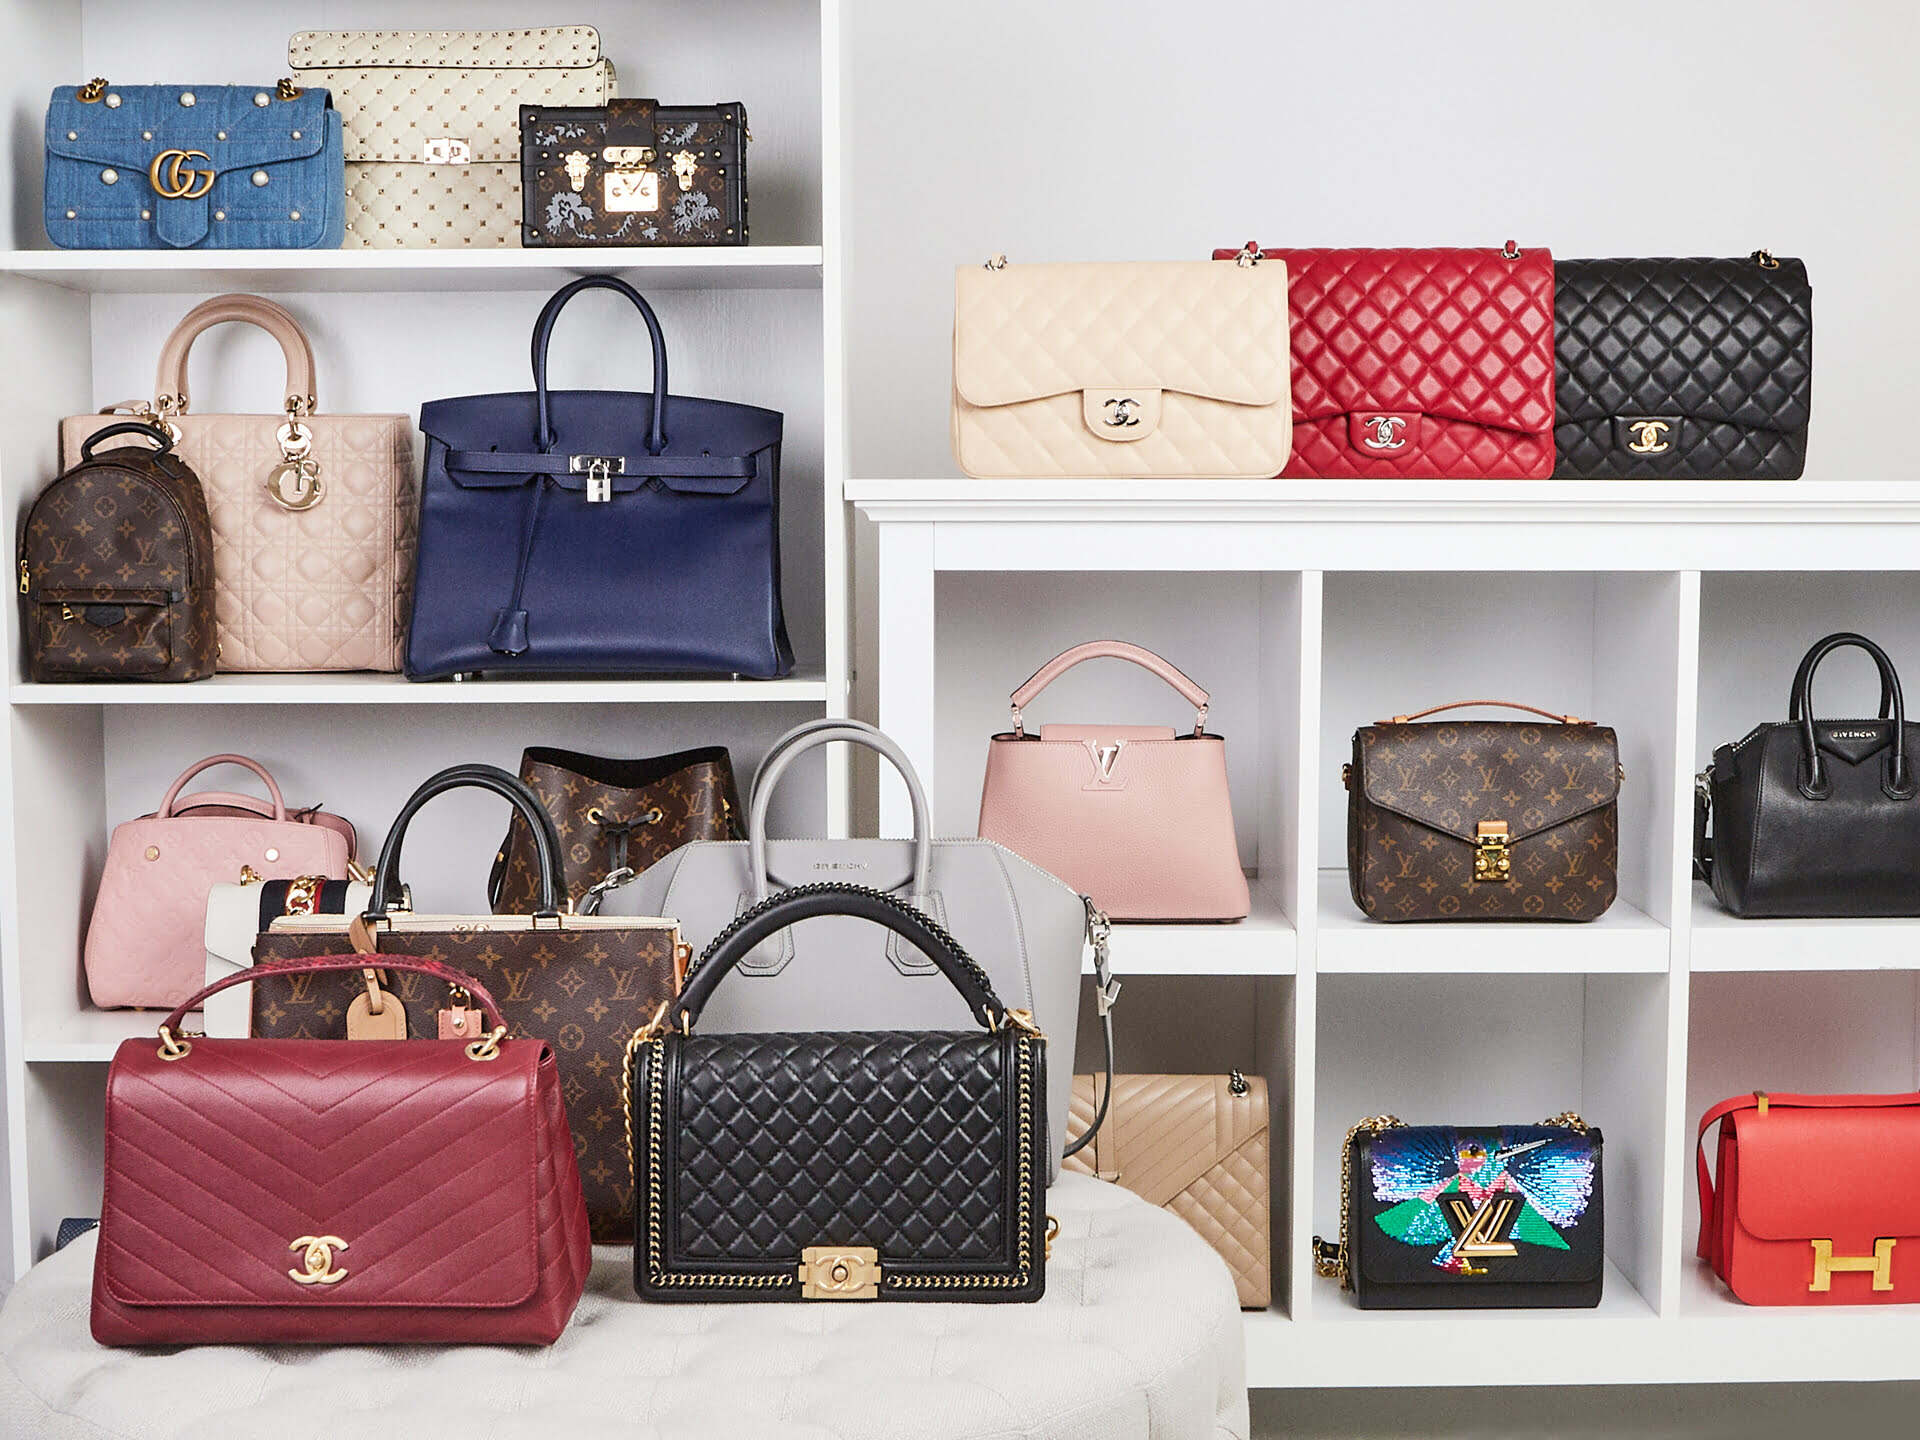 How To Store Designer Handbags In Closet